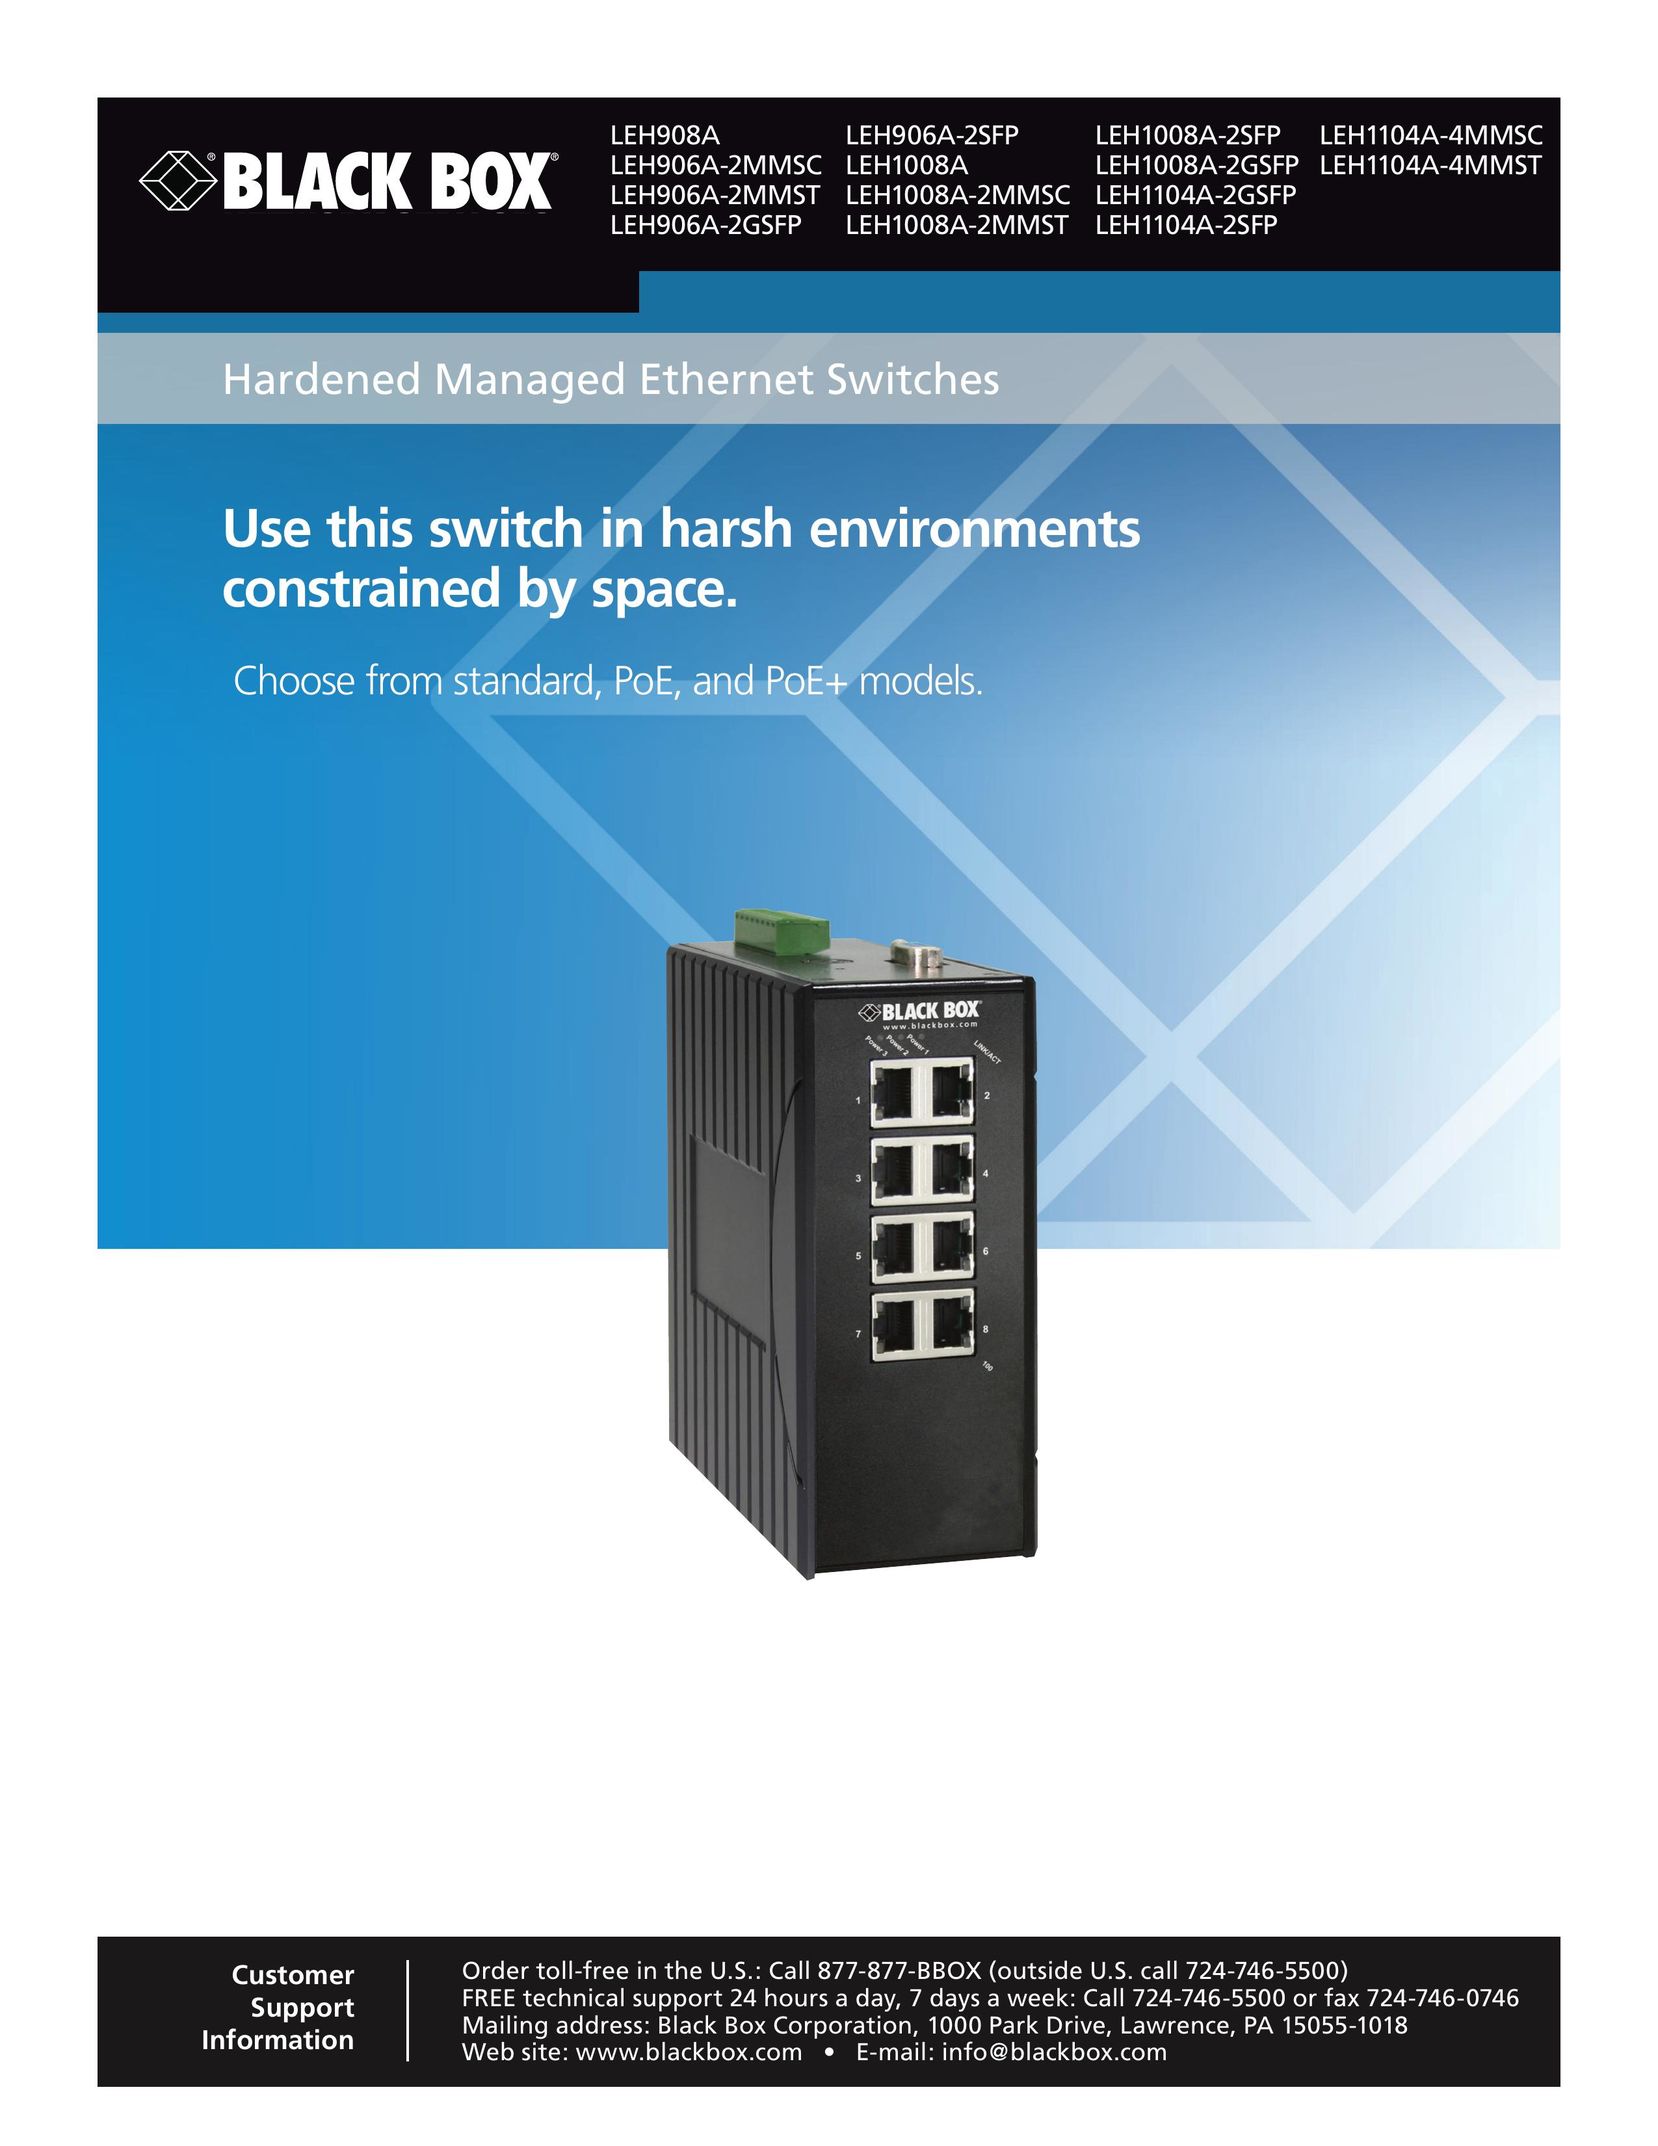 Black Box Hardened Managed Ethernet Switche Computer Hardware User Manual